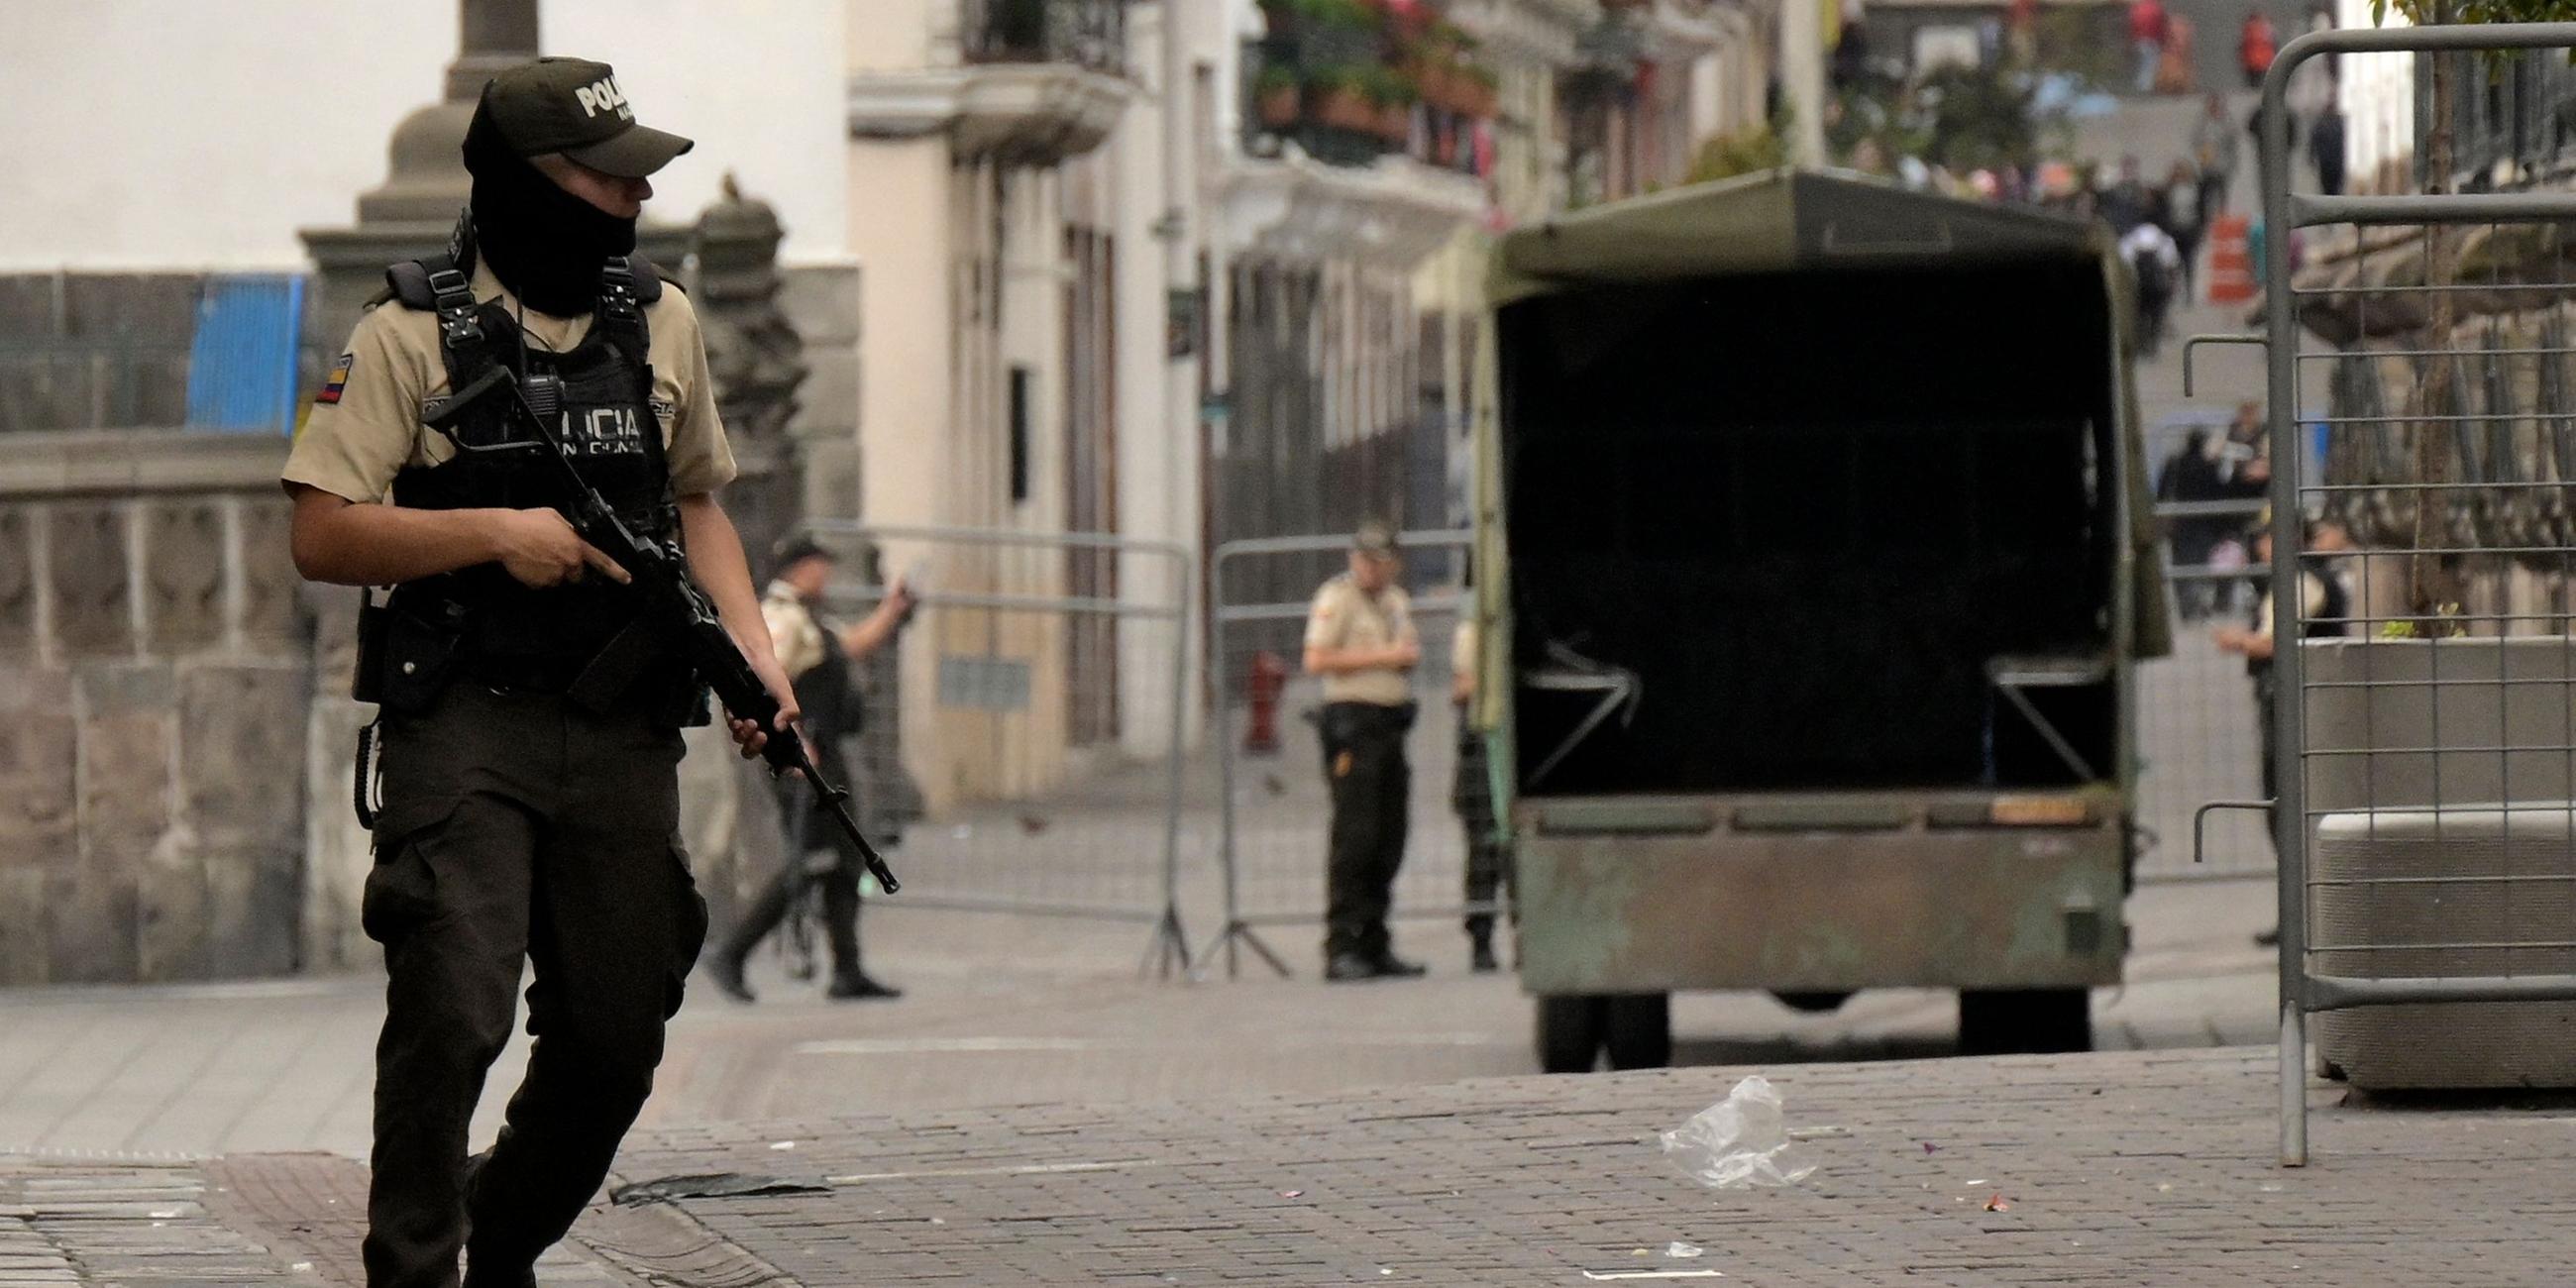 EIn bewaffneter Polizist steht auf einer Straße im Zentrum.